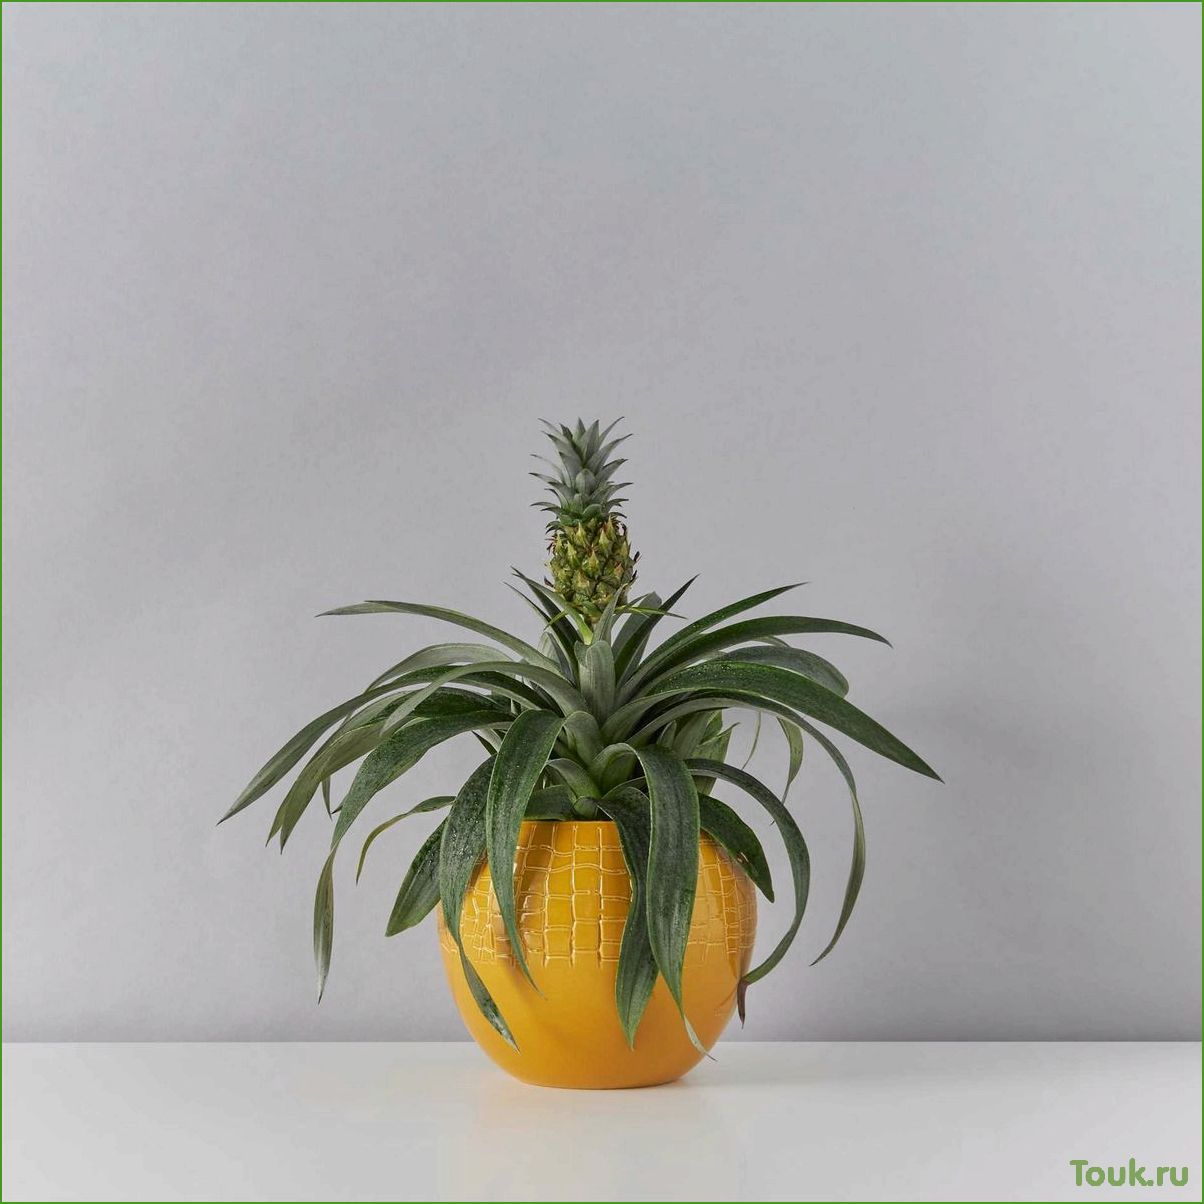 Комнатный ананас: уход, размножение и полезные свойства